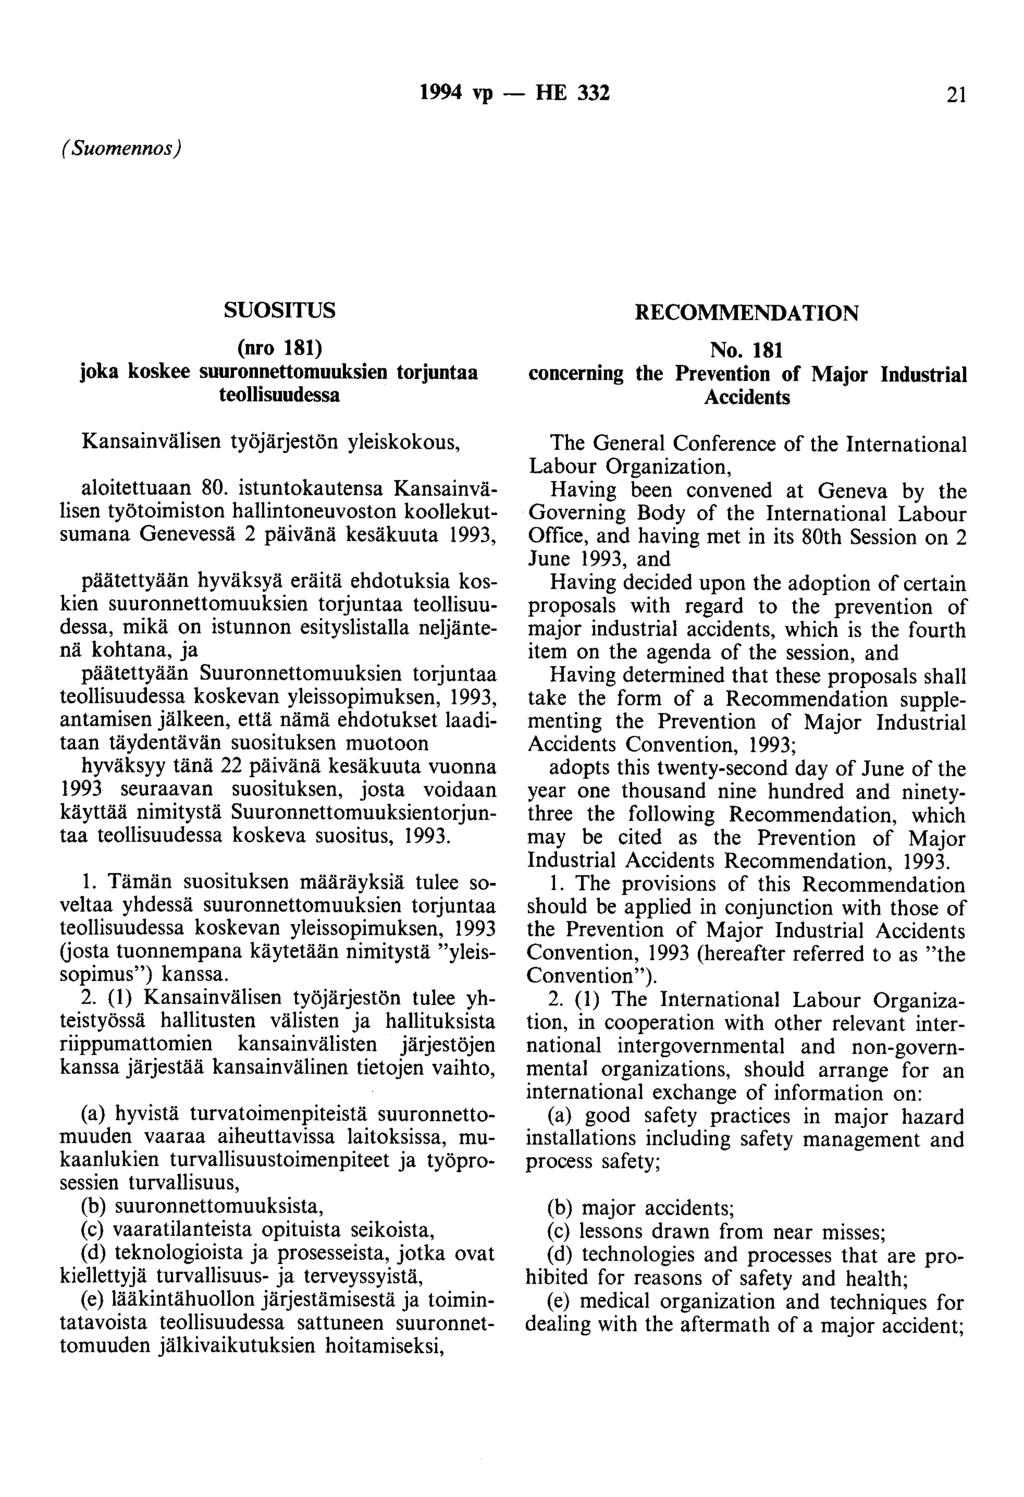 1994 vp -- lie 332 21 (Suomennos) SUOSITUS (nro 181) joka koskee suuronnettomuuksien torjuntaa teollisuudessa Kansainvälisen työjärjestön yleiskokous, aloitettuaan 80.